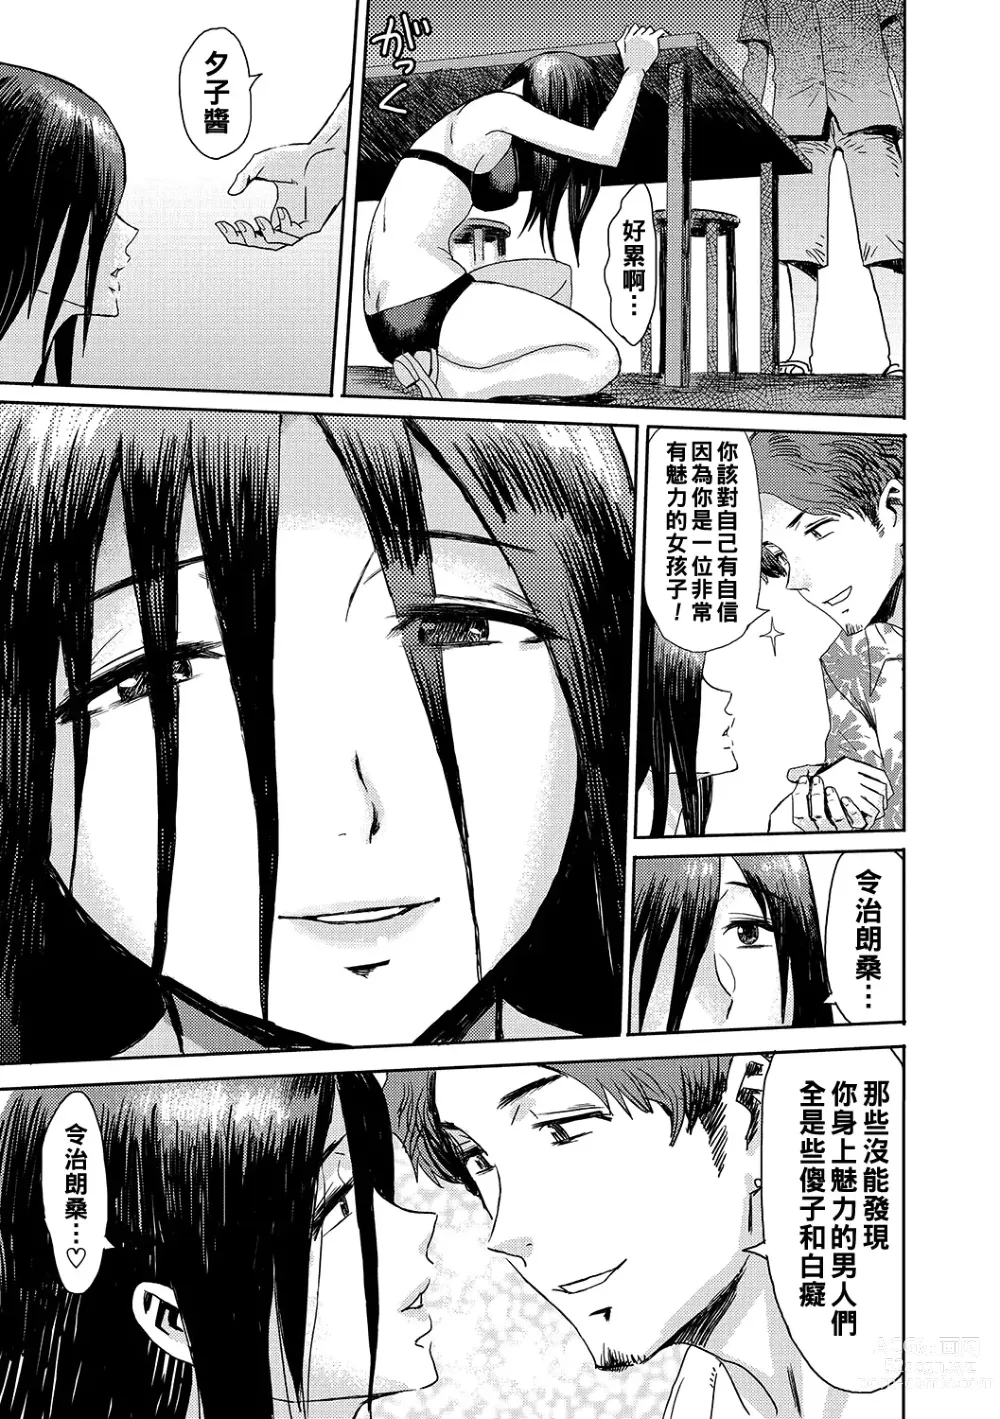 Page 5 of manga Natsu no Shiosai